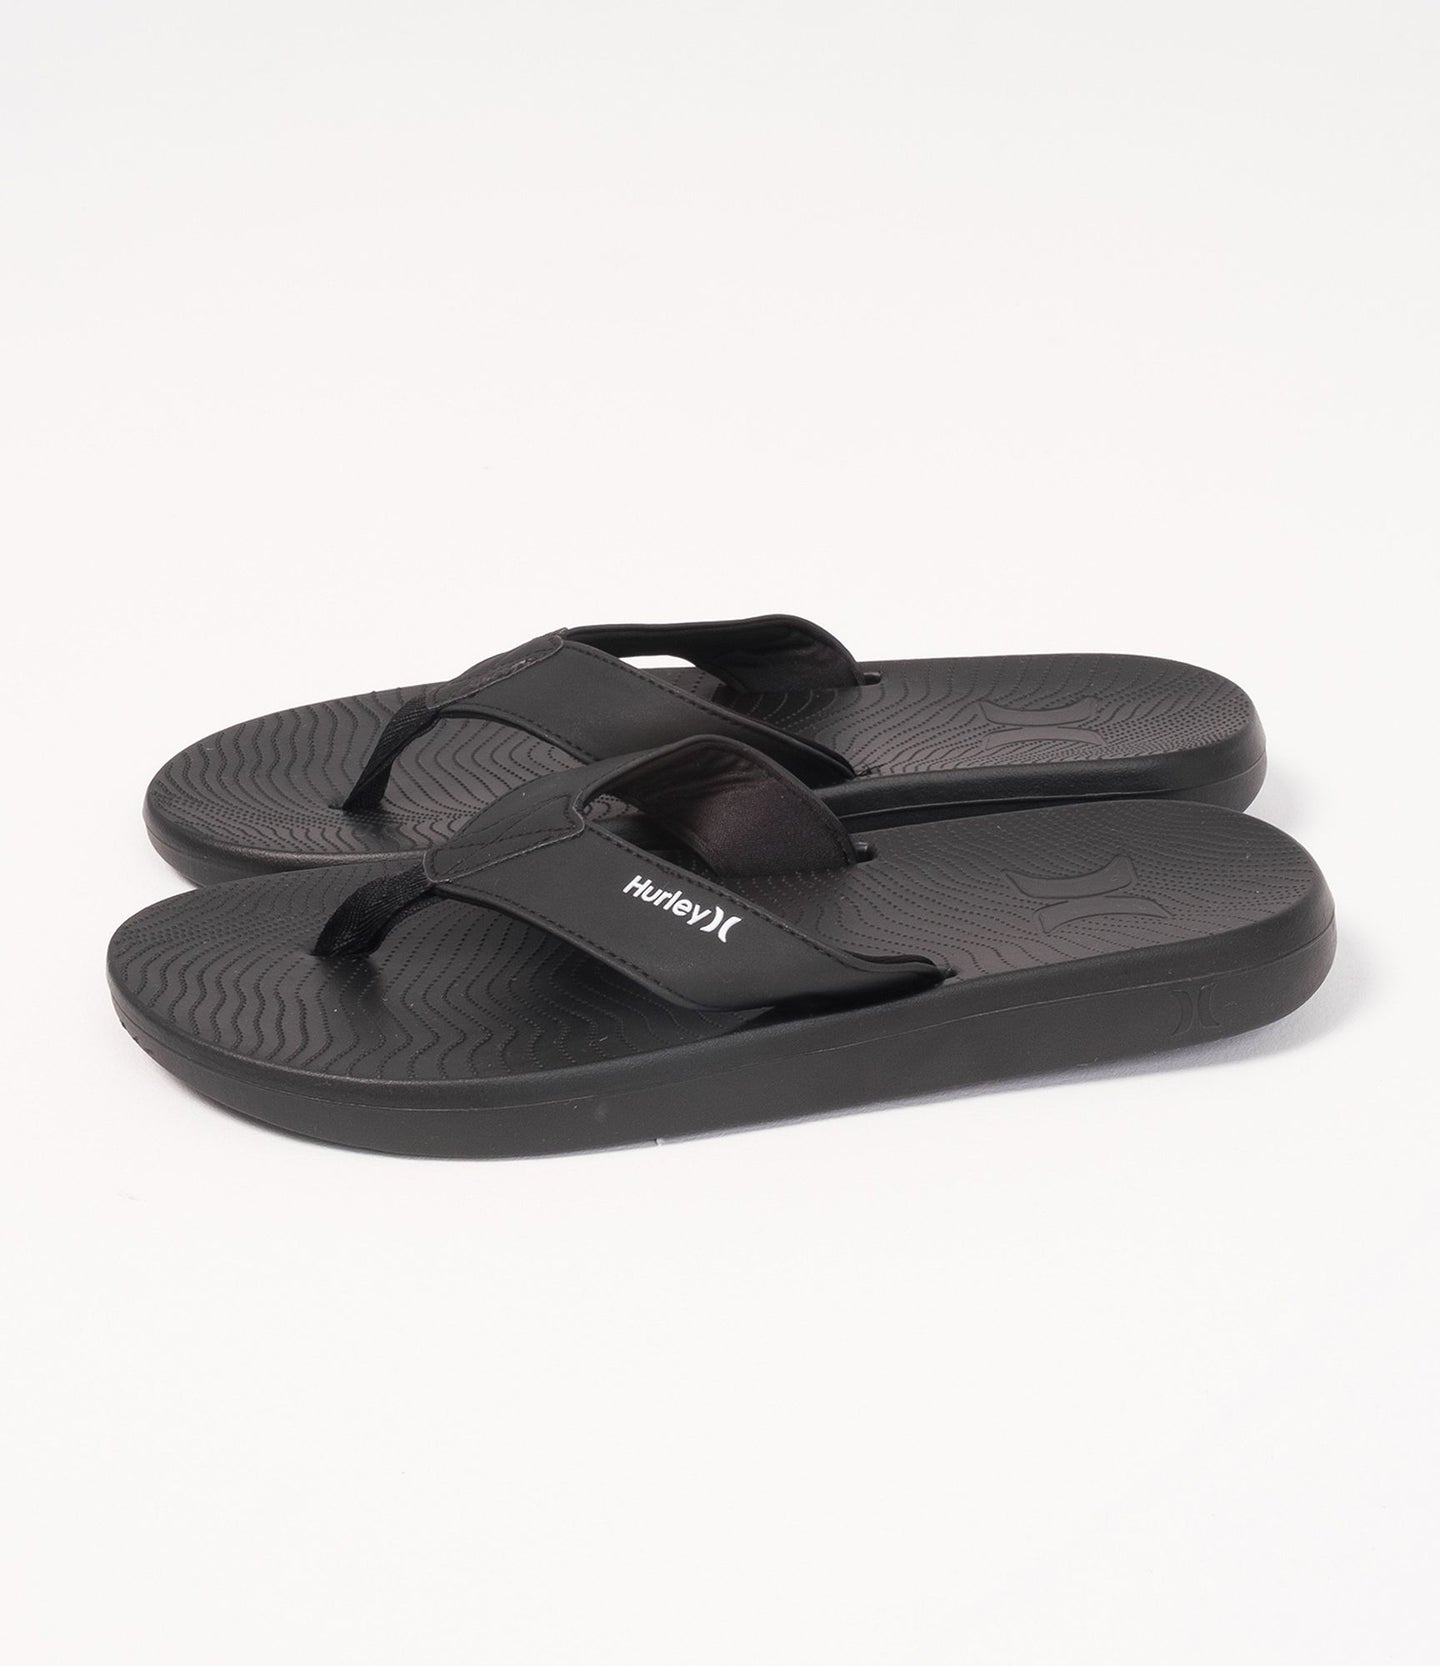 Hurley - Crest Flip Flop Sandals